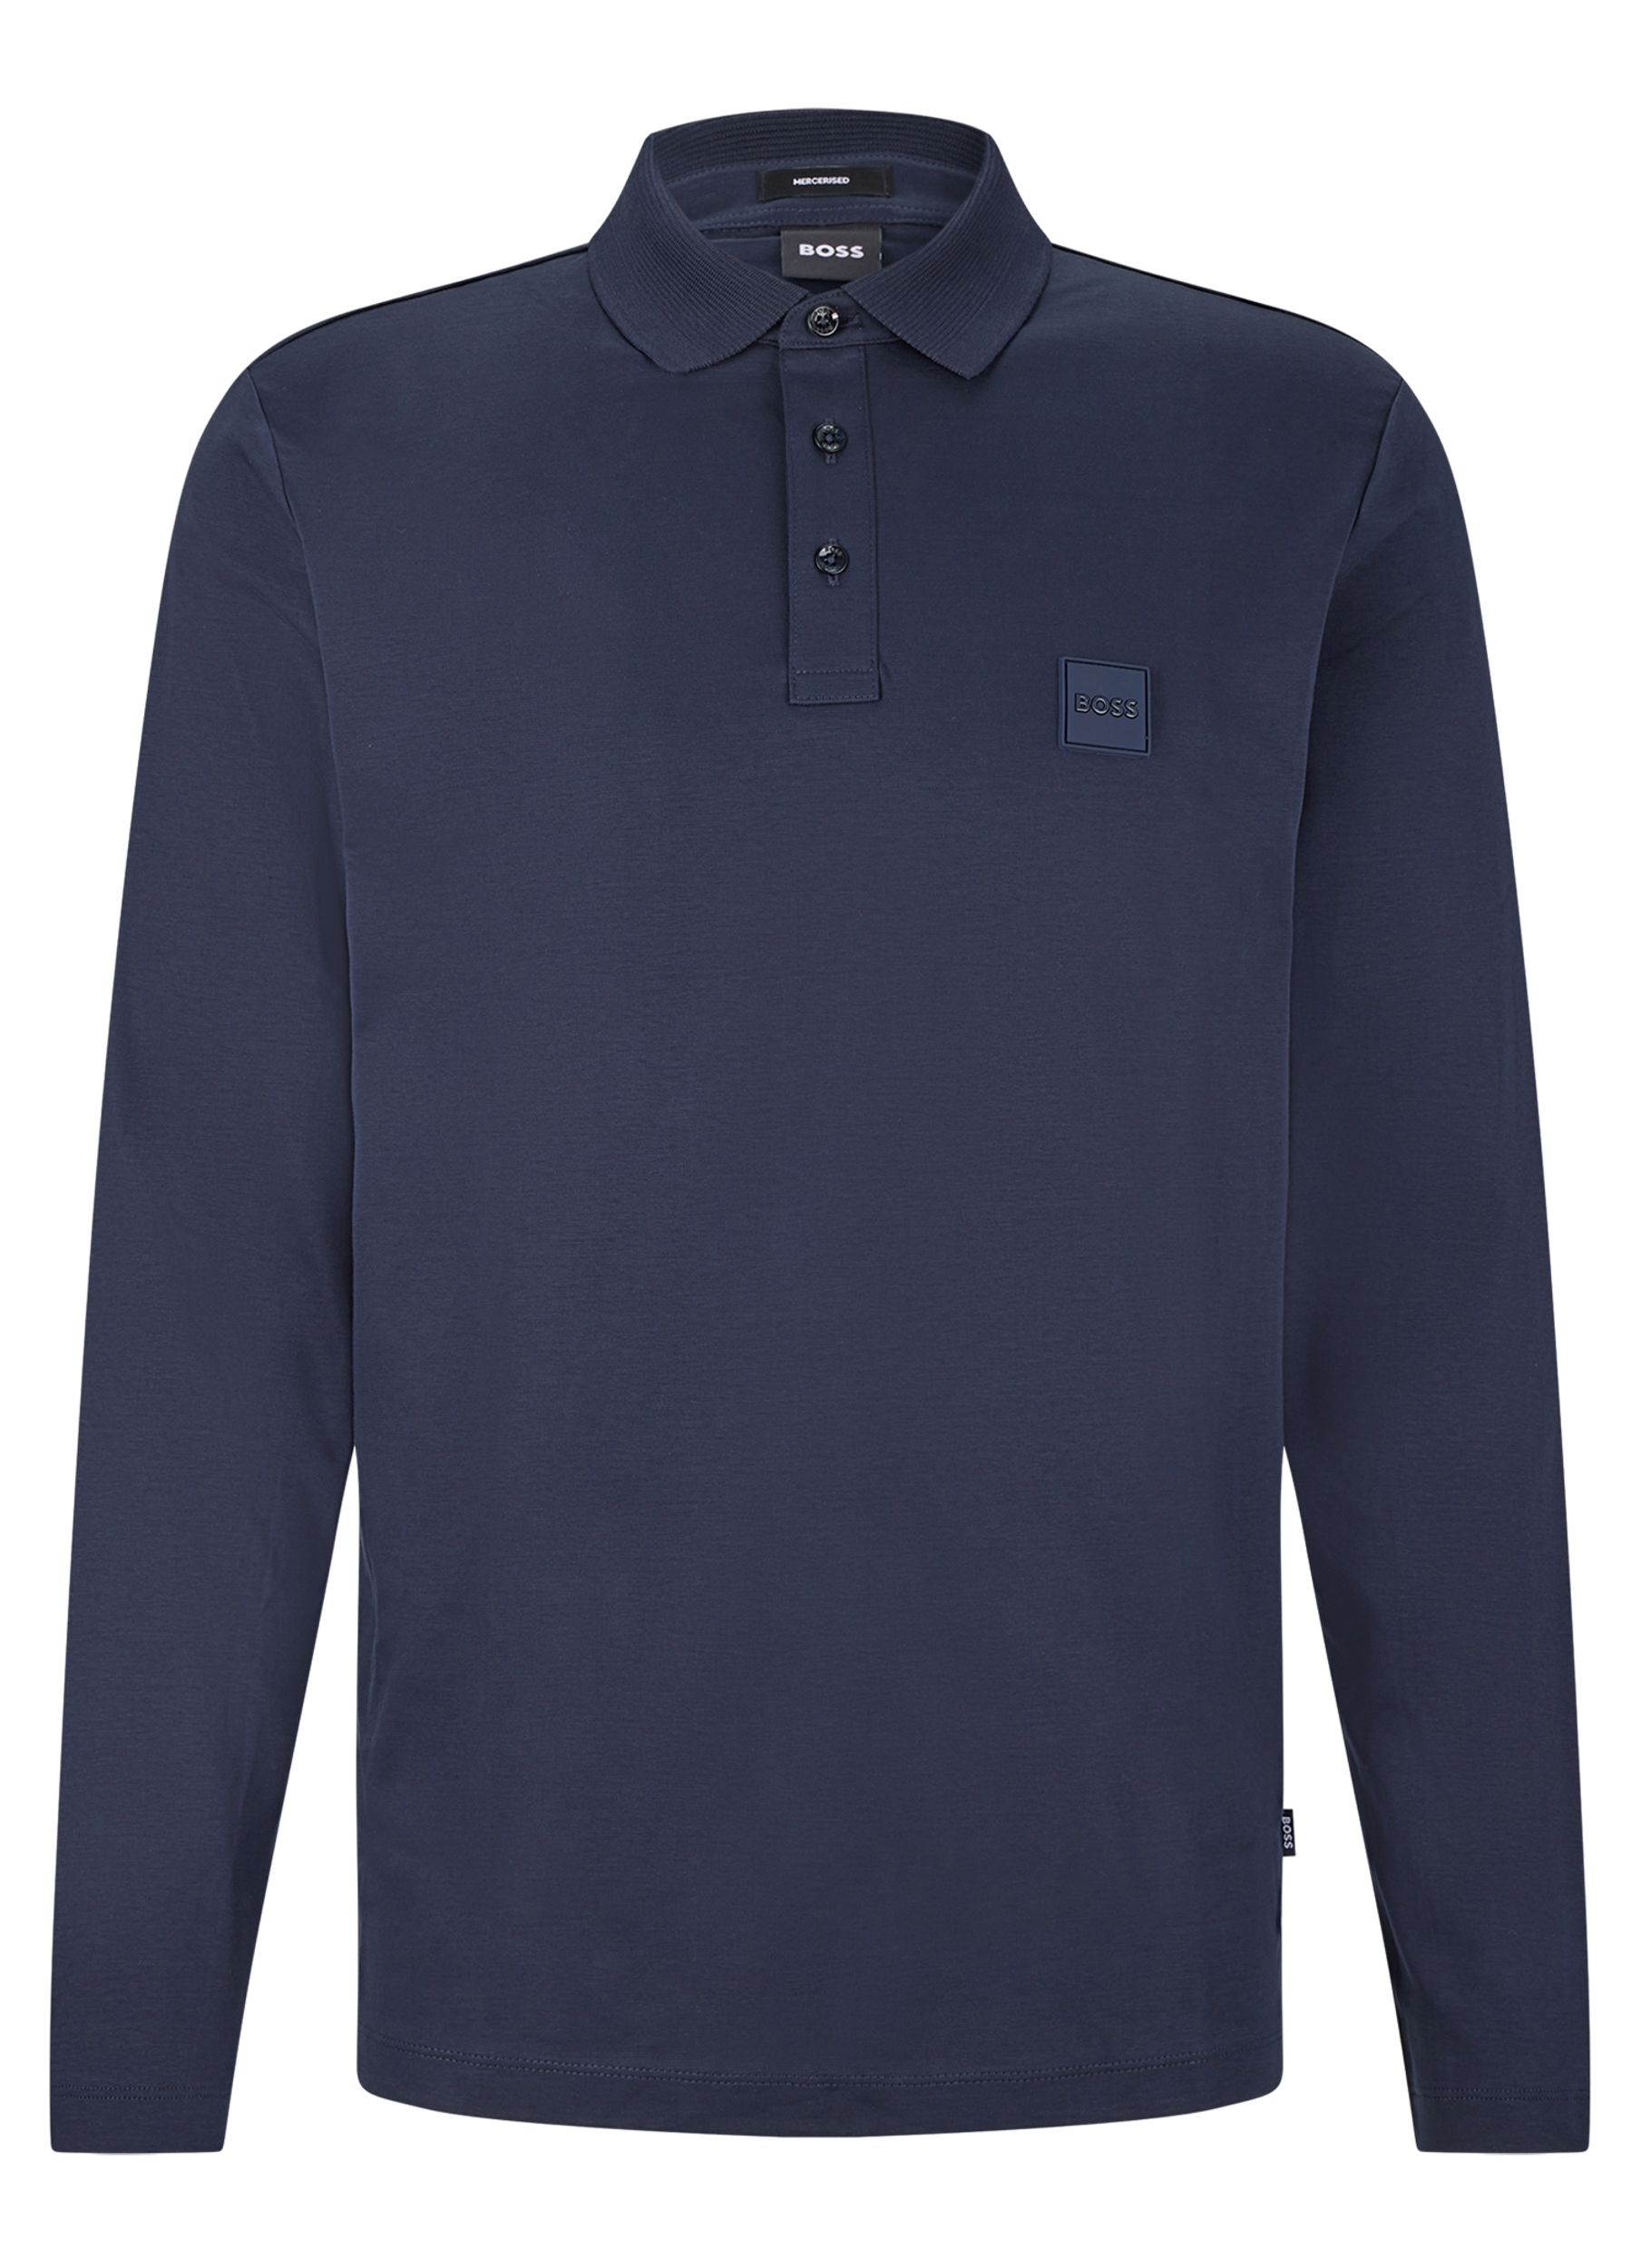 Hugo Boss Menswear Polo LM Donker blauw 082436-002-L